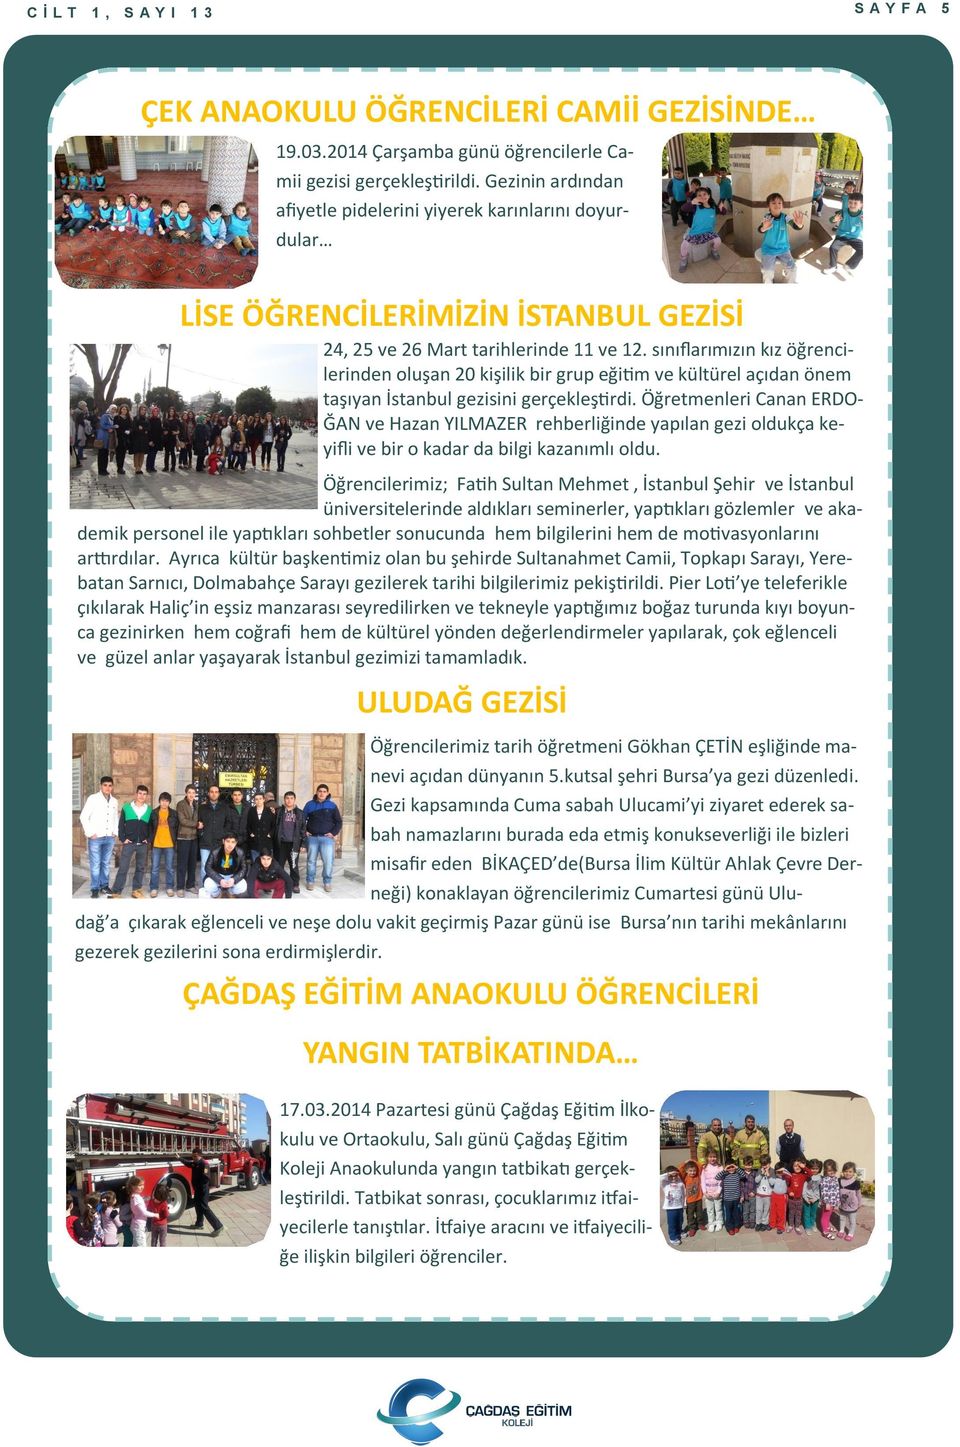 sınıflarımızın kız öğrencilerinden oluşan 20 kişilik bir grup eğitim ve kültürel açıdan önem taşıyan İstanbul gezisini gerçekleştirdi.